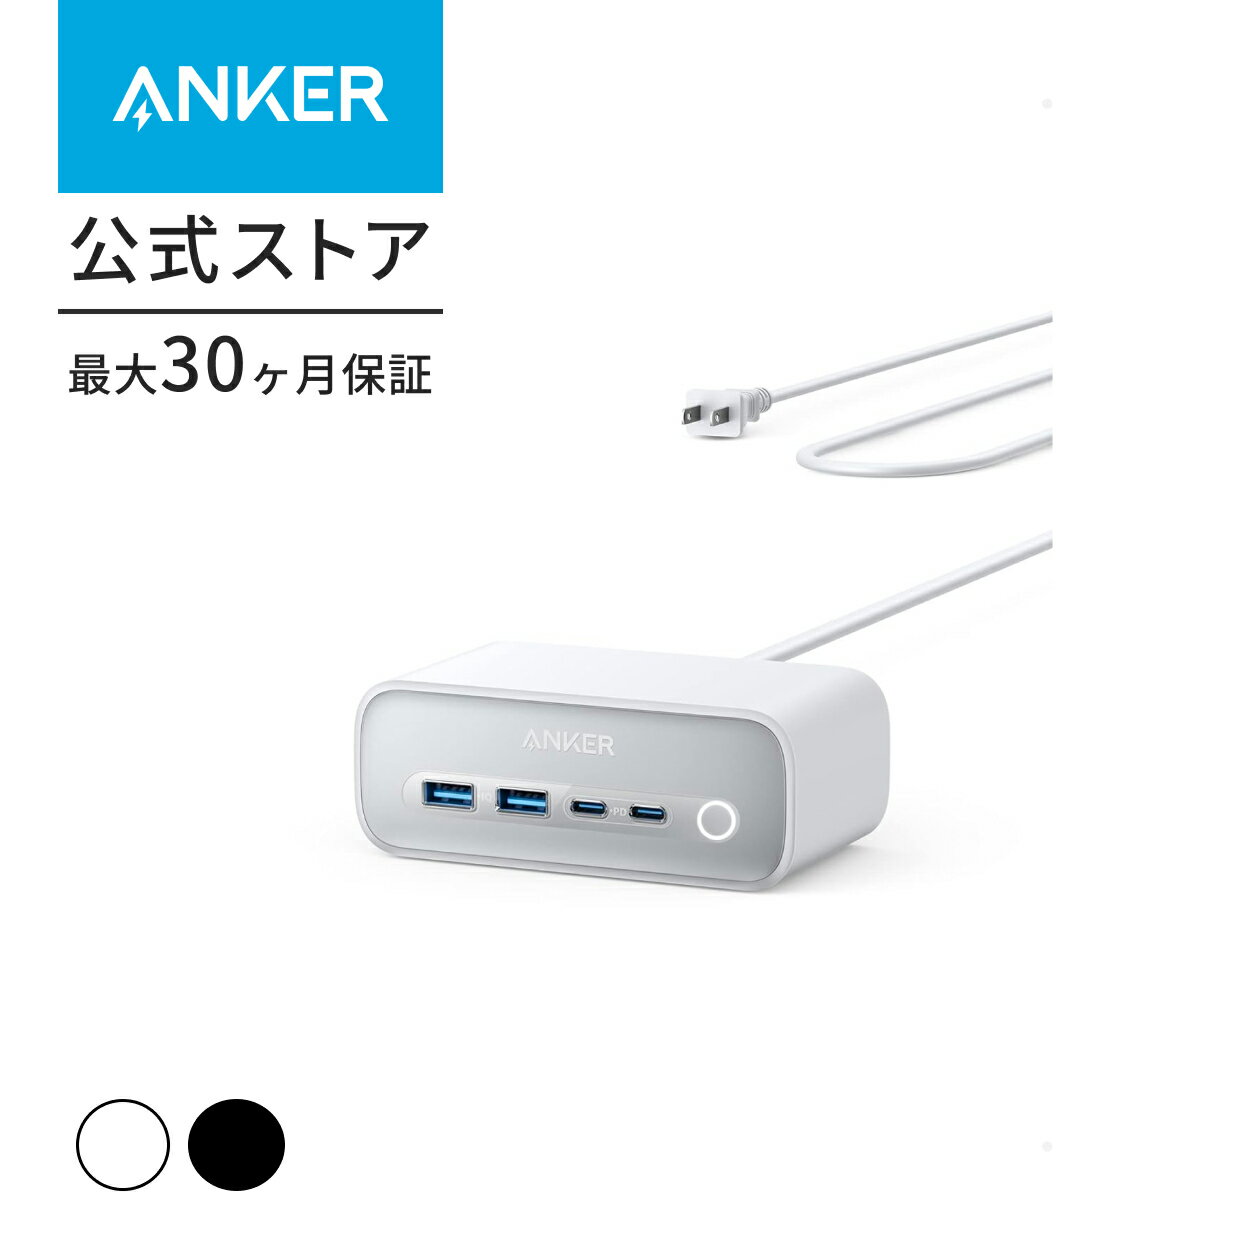 【あす楽対応】Anker 525 Charging Station USBタップ 電源タップ AC差込口 3口 USB-C 2ポート USB-A 2ポート 延長コード 1.5m 【PSE技術基準適合/USB Power Delivery対応 】